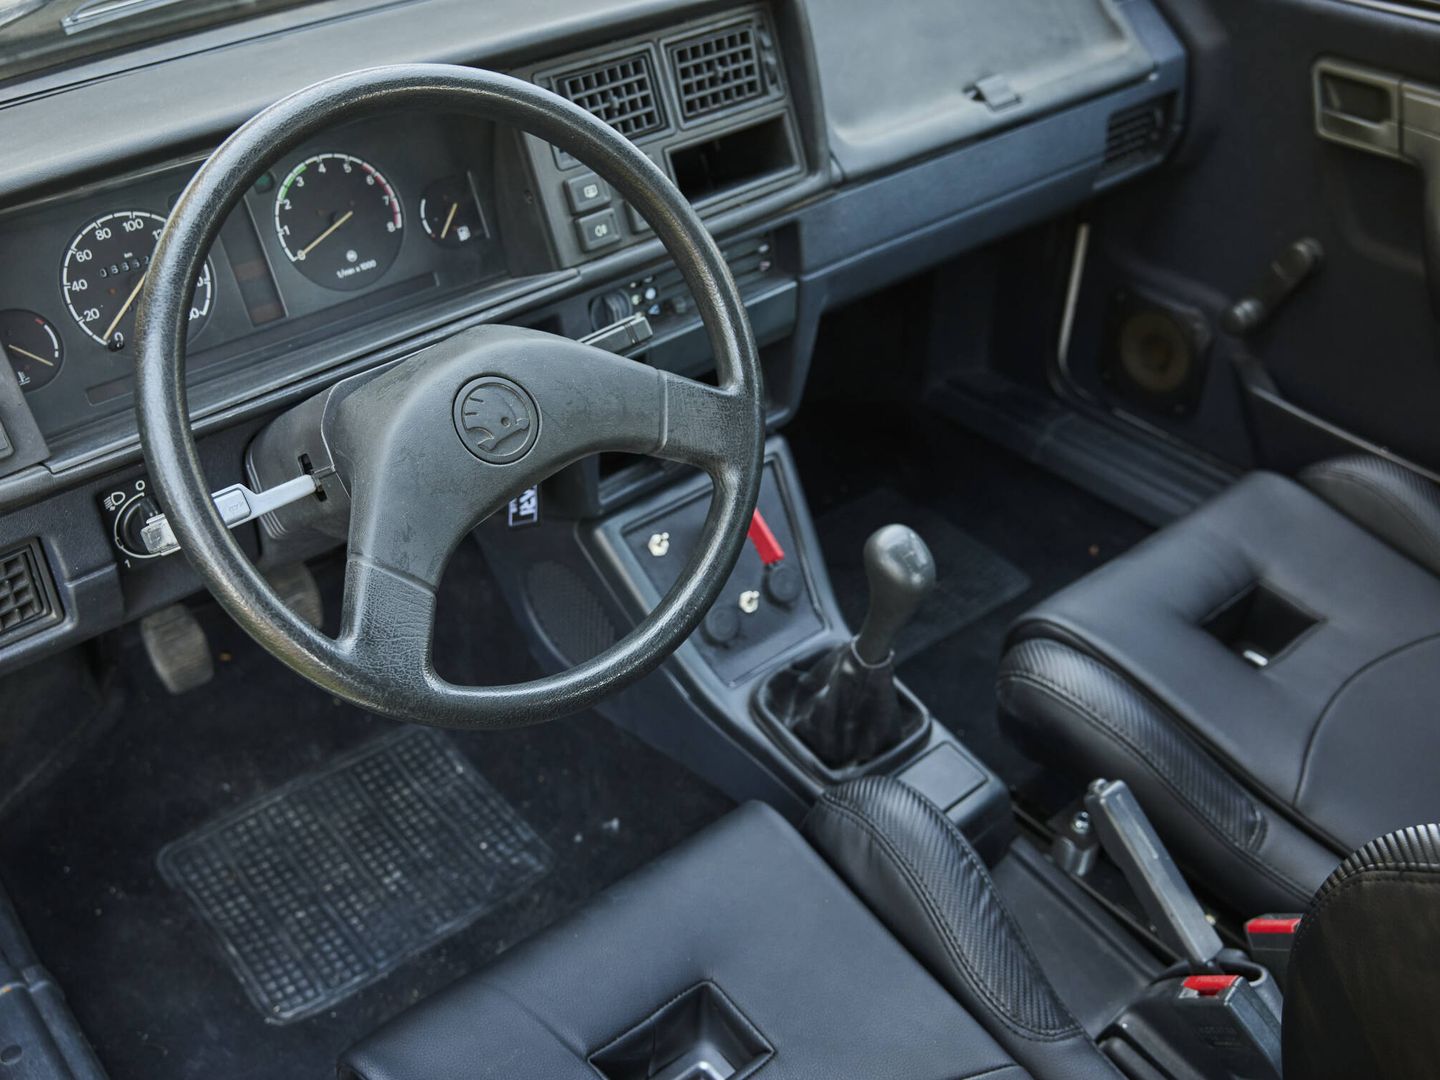 Tanto el volante, salpicadero, cambio o freno de mano son los originales del coche.